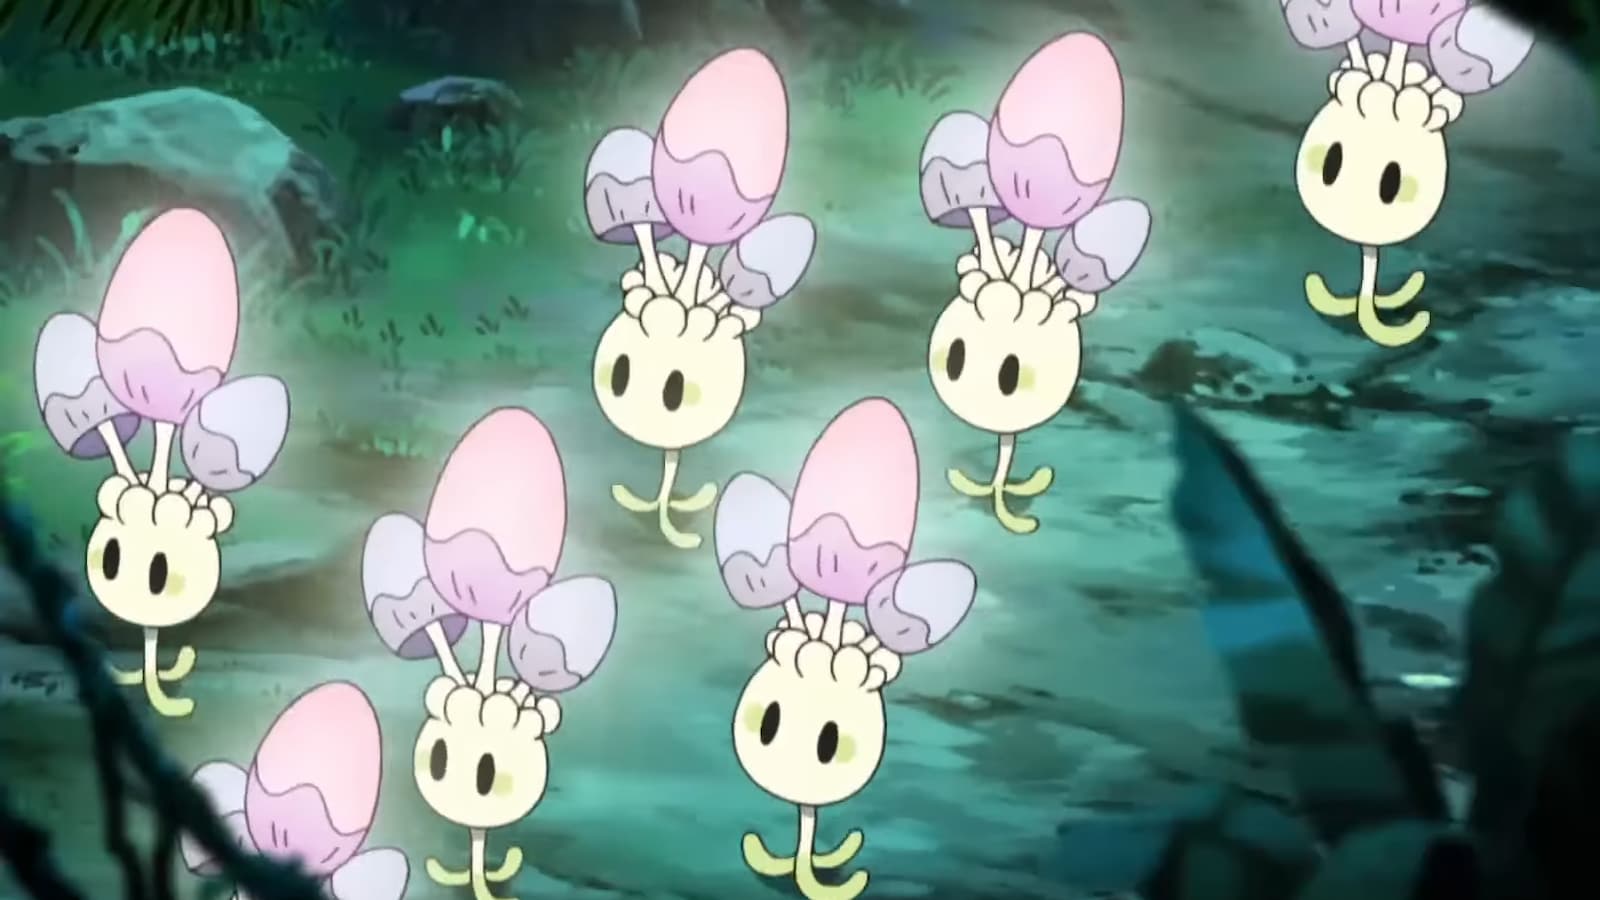 Morelull group in the Pokemon anime